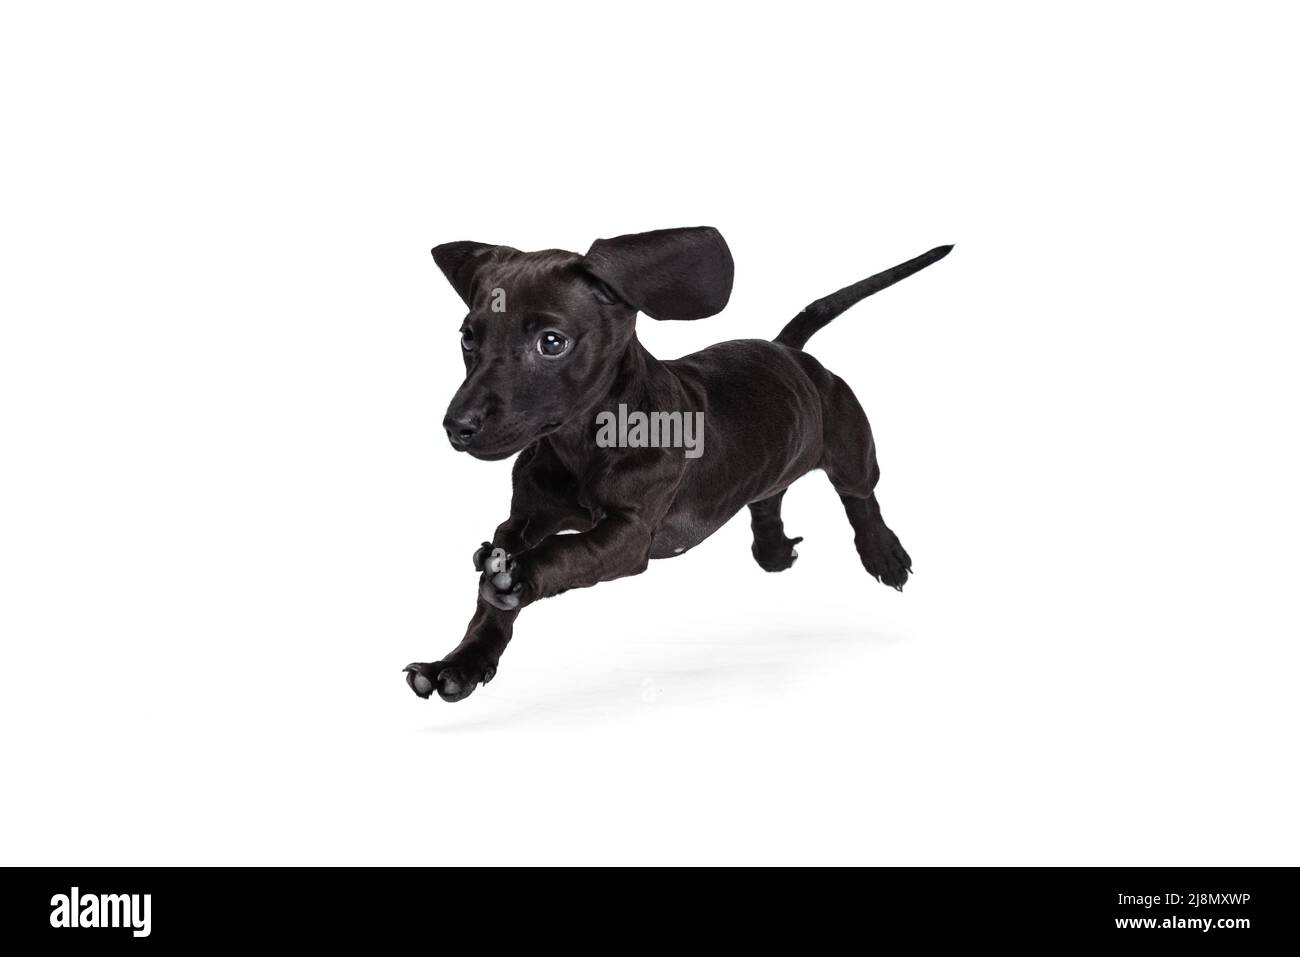 Bellissimo cucciolo di dachshund cane salto, in esecuzione isolato su sfondo bianco studio. Concetto di movimento, amore per gli animali domestici, vita animale. Foto Stock